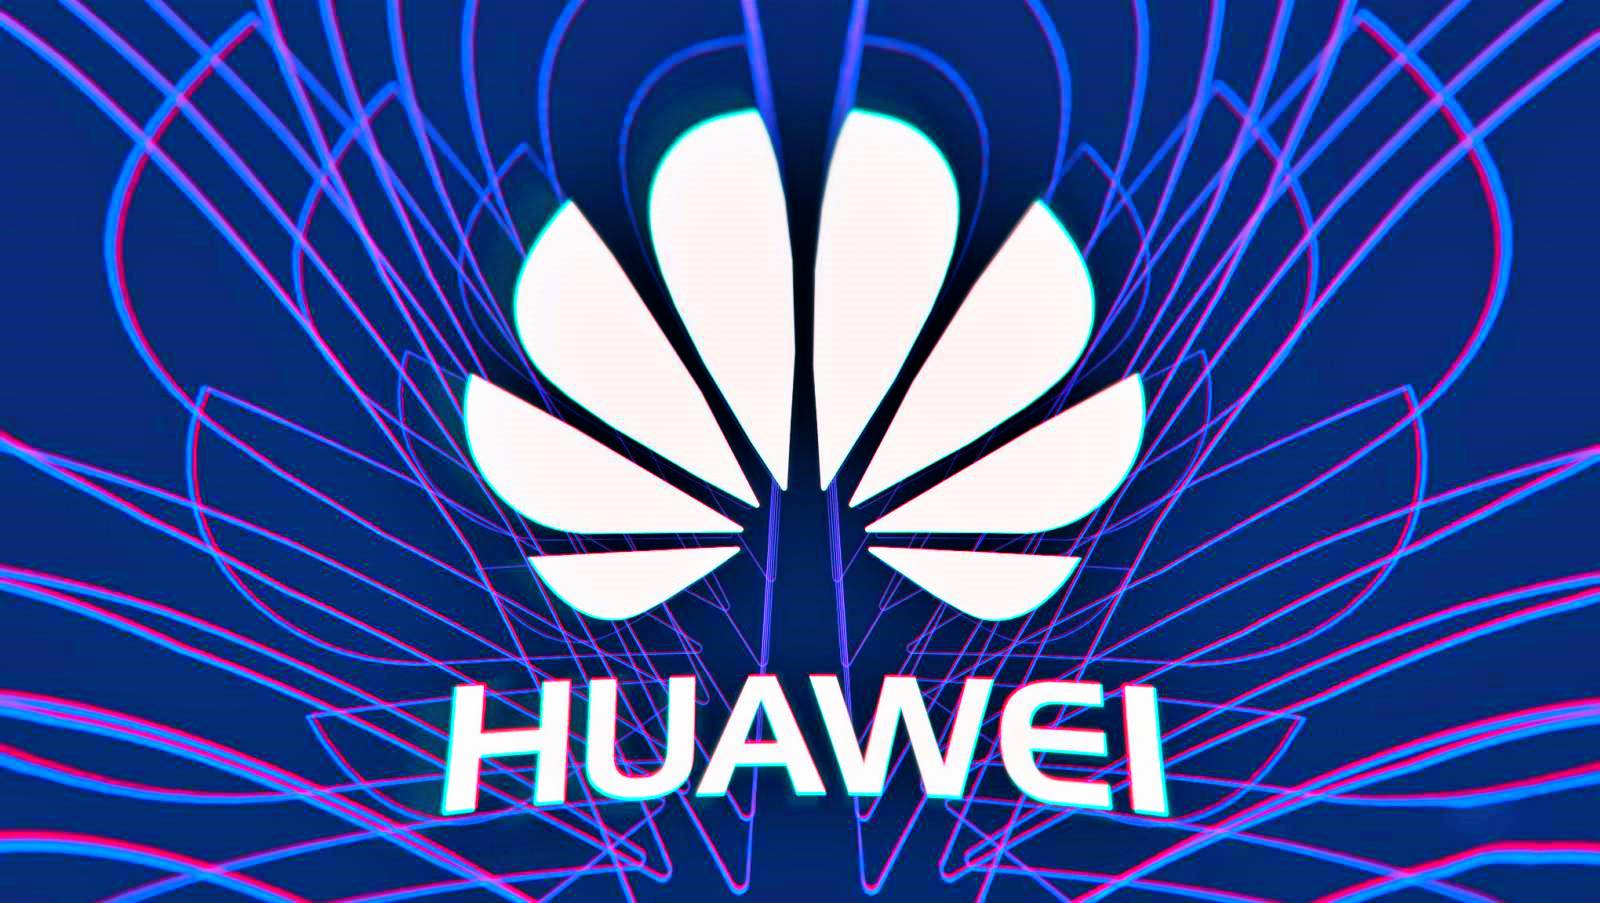 Huawei forzando